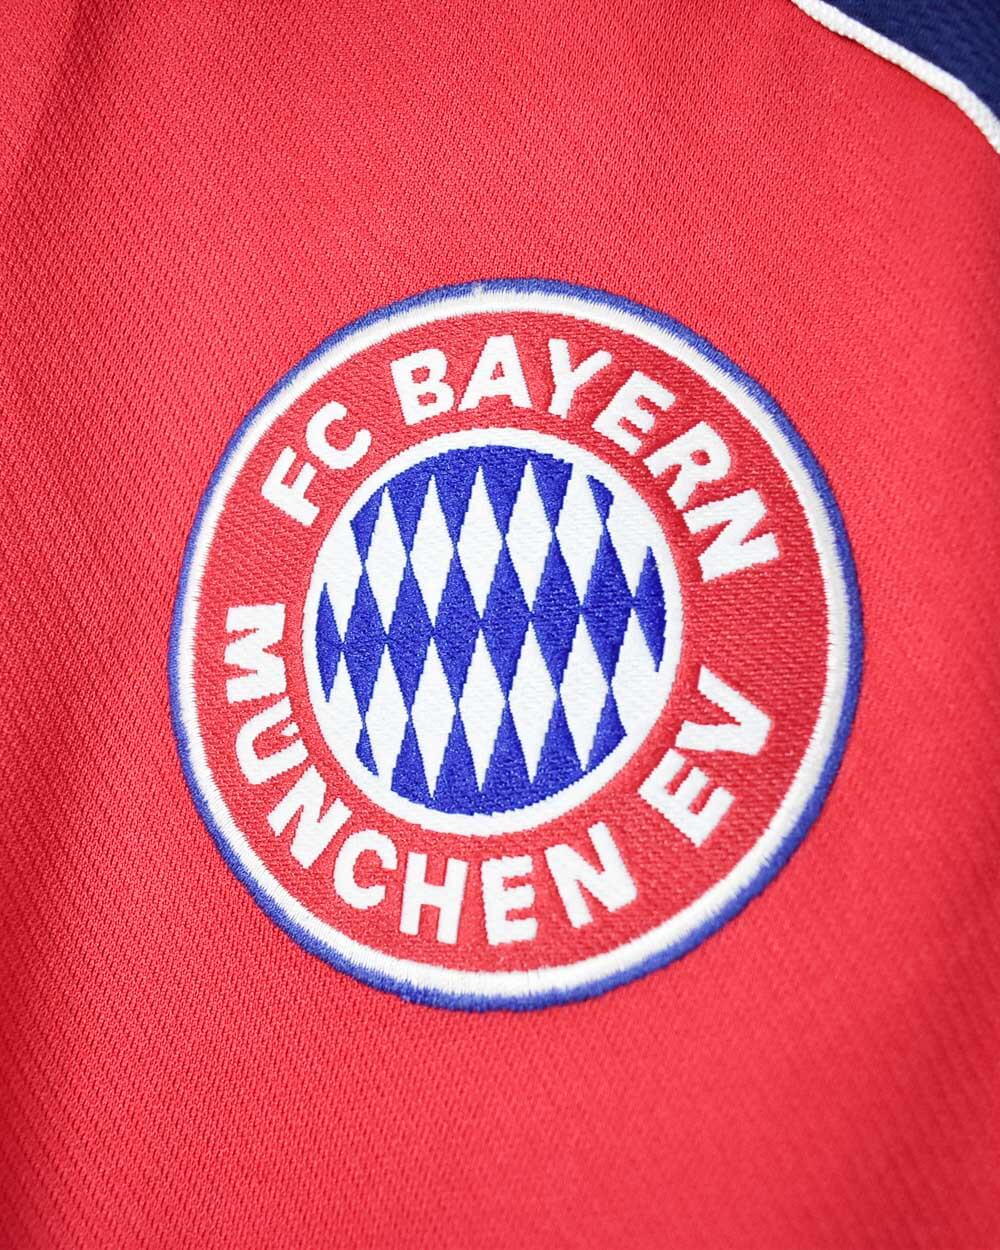 Red Adidas Bayern Munich 1999/00 Home Football Shirt - X-Large